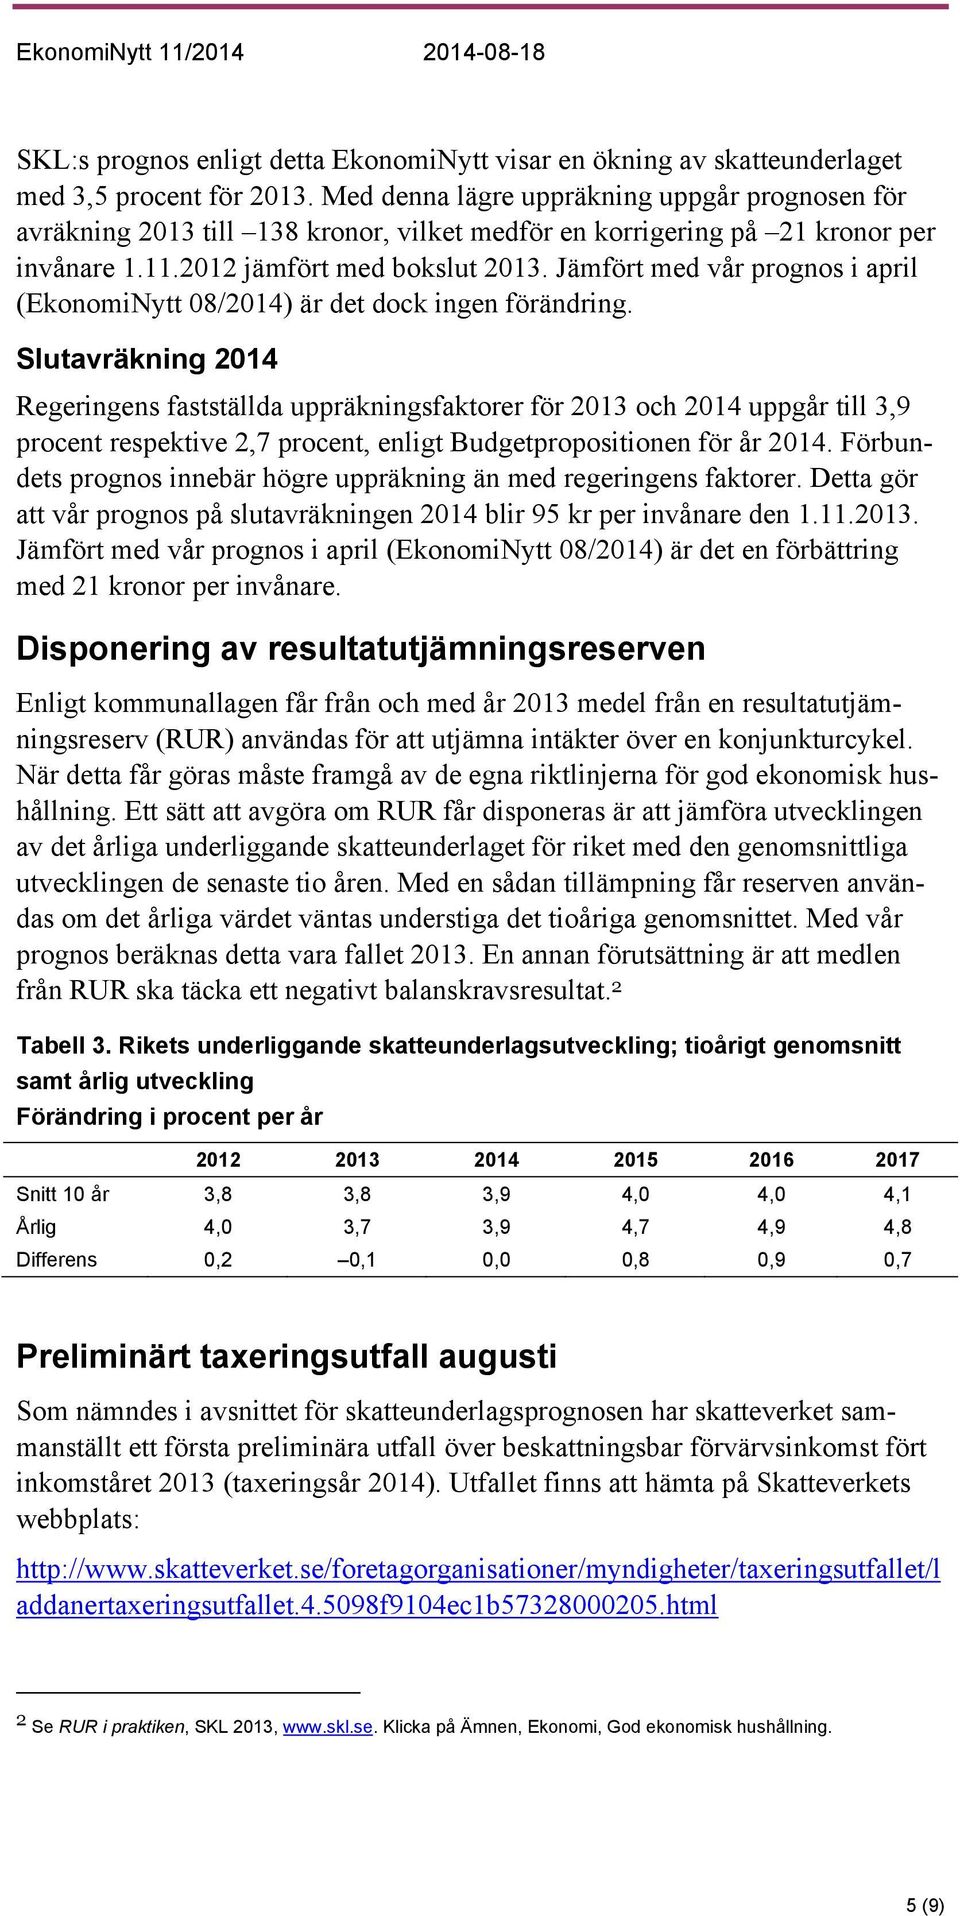 Jämfört med vår prognos i april (EkonomiNytt 08/2014) är det dock ingen förändring.